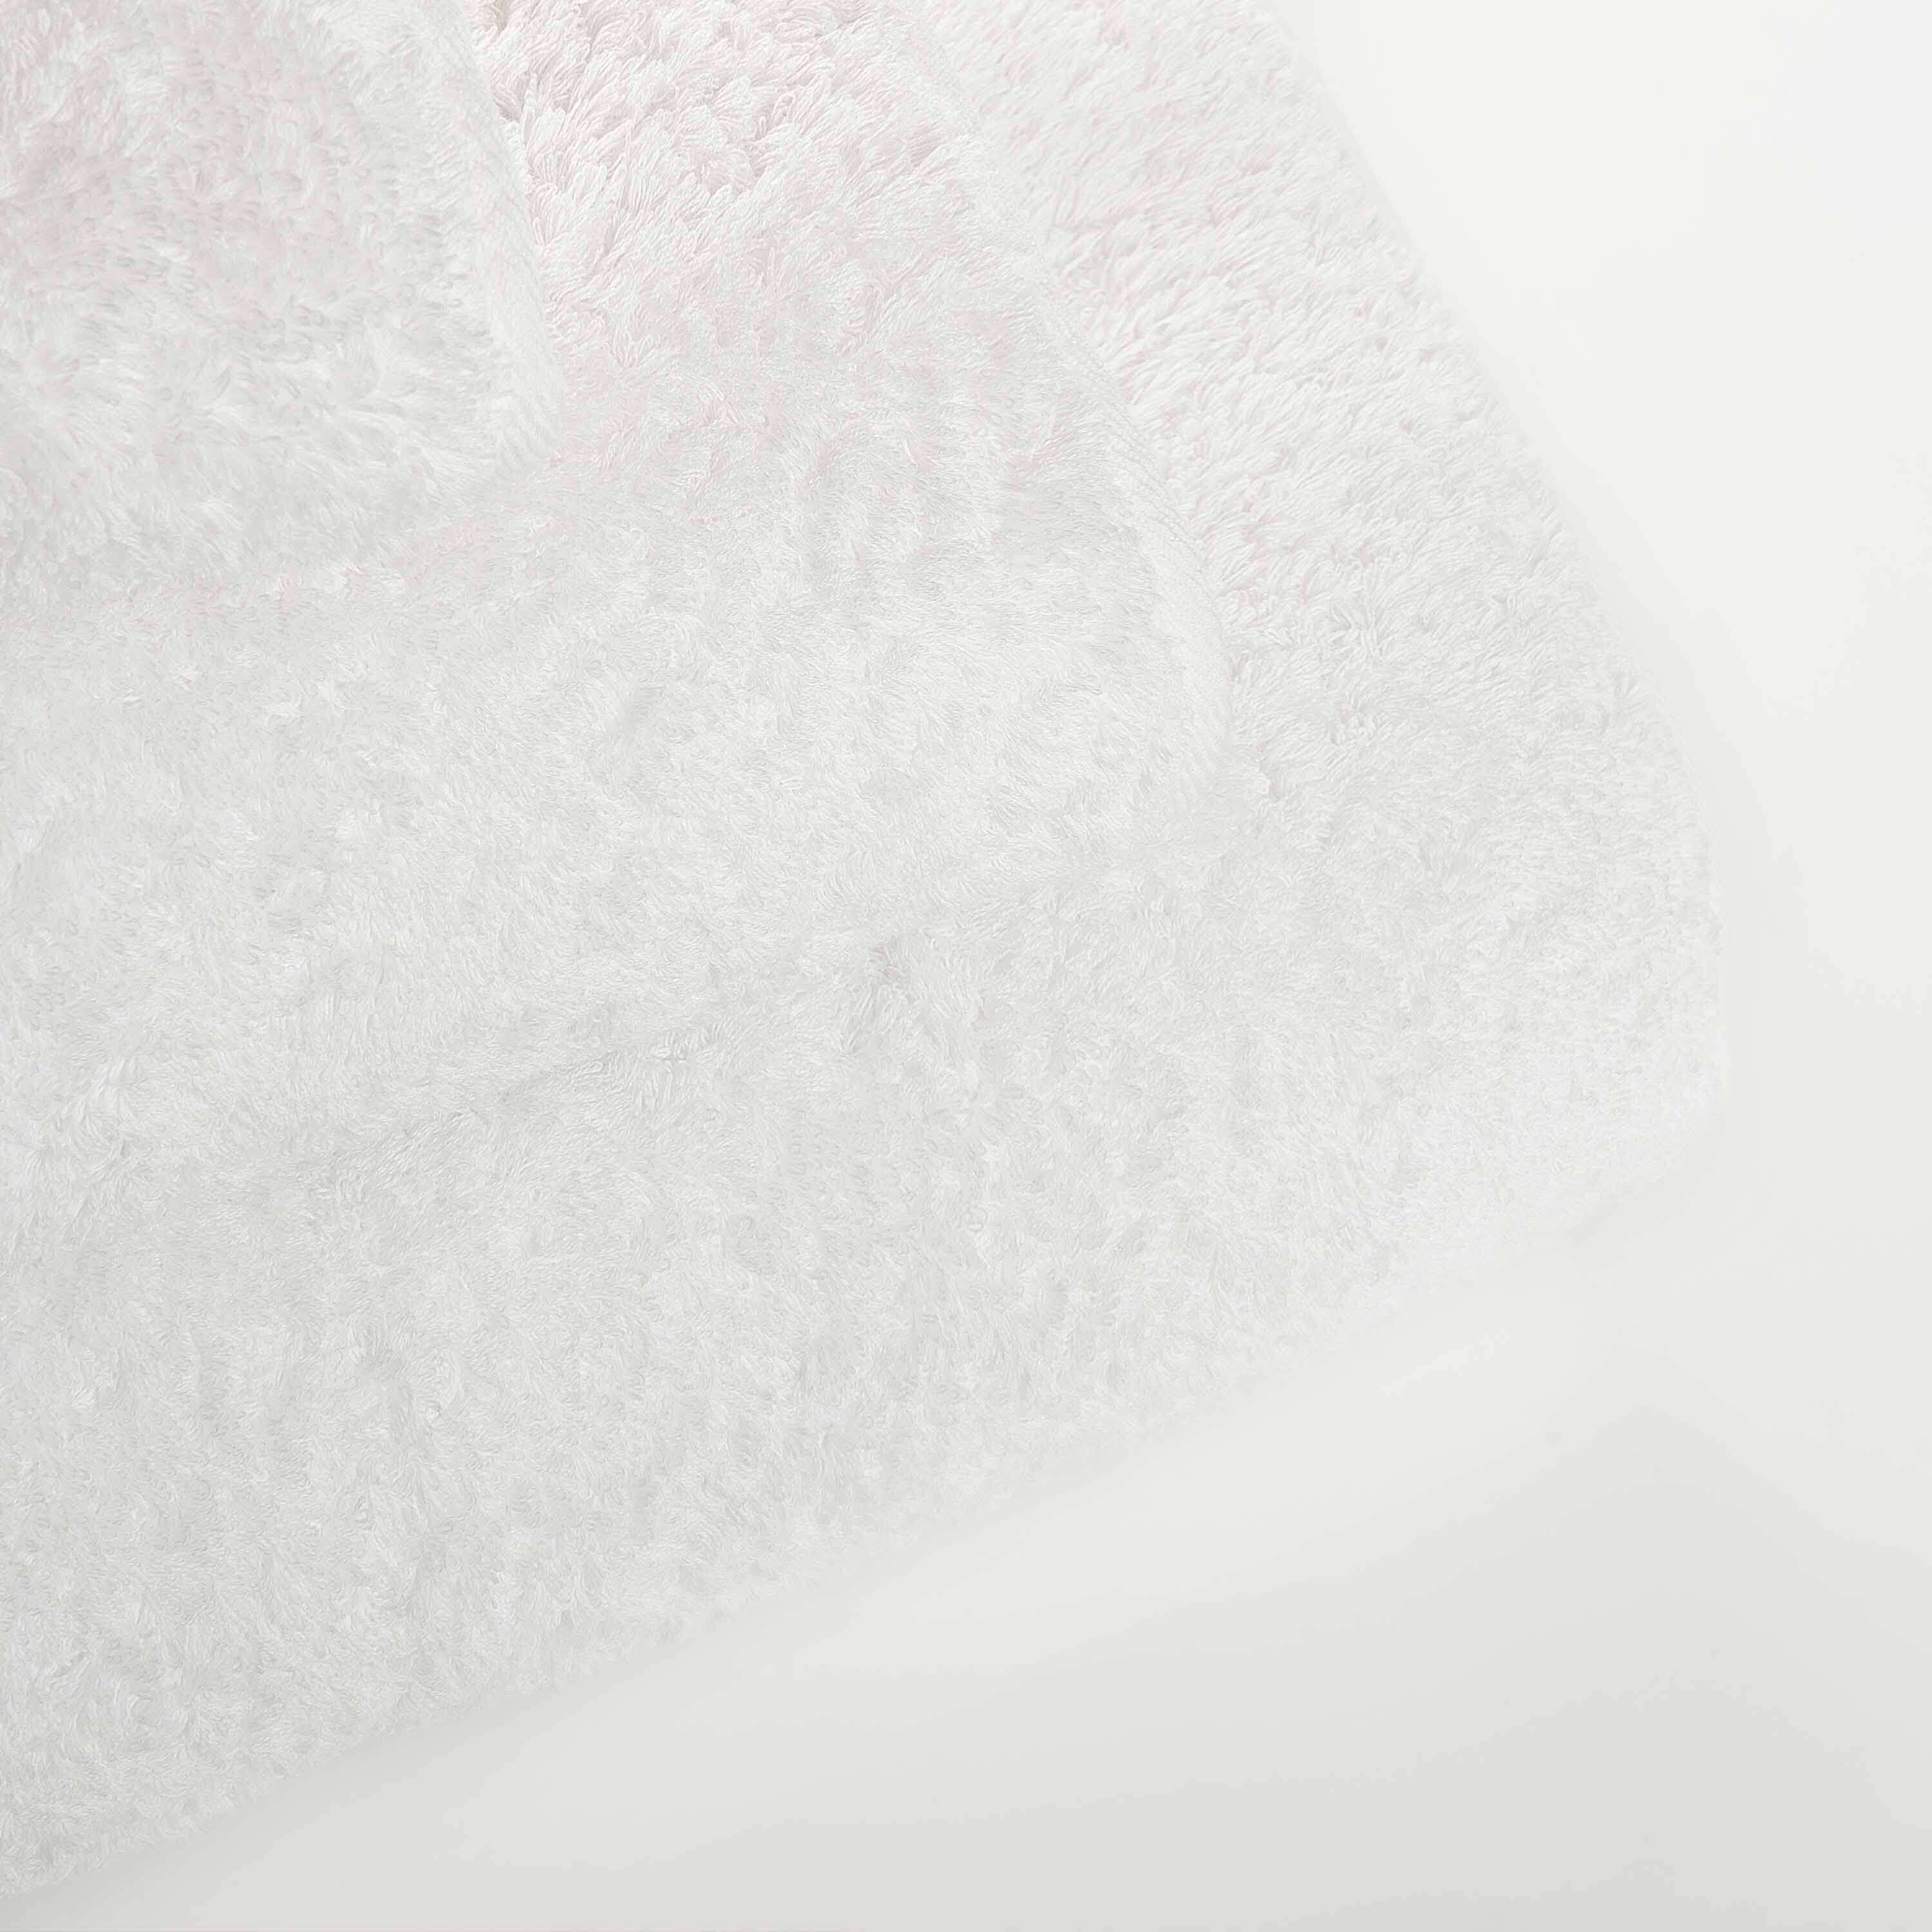 Элитное полотенце Egoist Range White ☞ Размер: 95 x 150 см